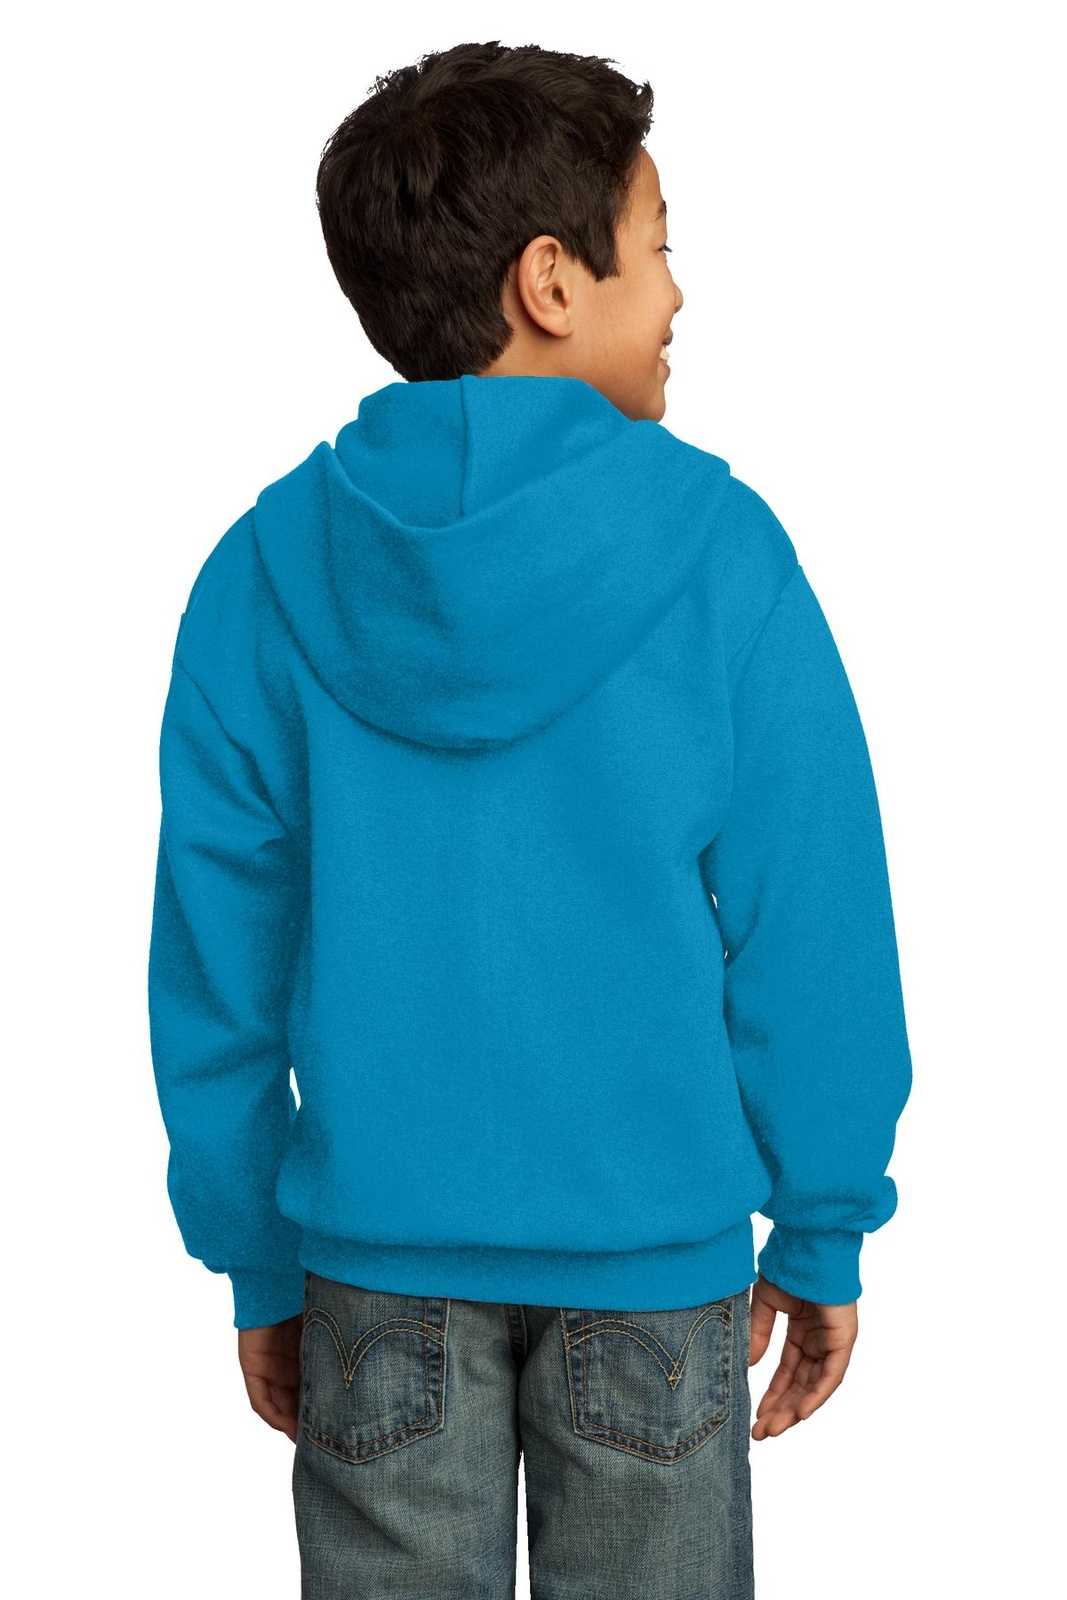 Port & Company PC90YZH Youth Core Fleece Full-Zip Hooded Sweatshirt - Neon Blue - HIT a Double - 1